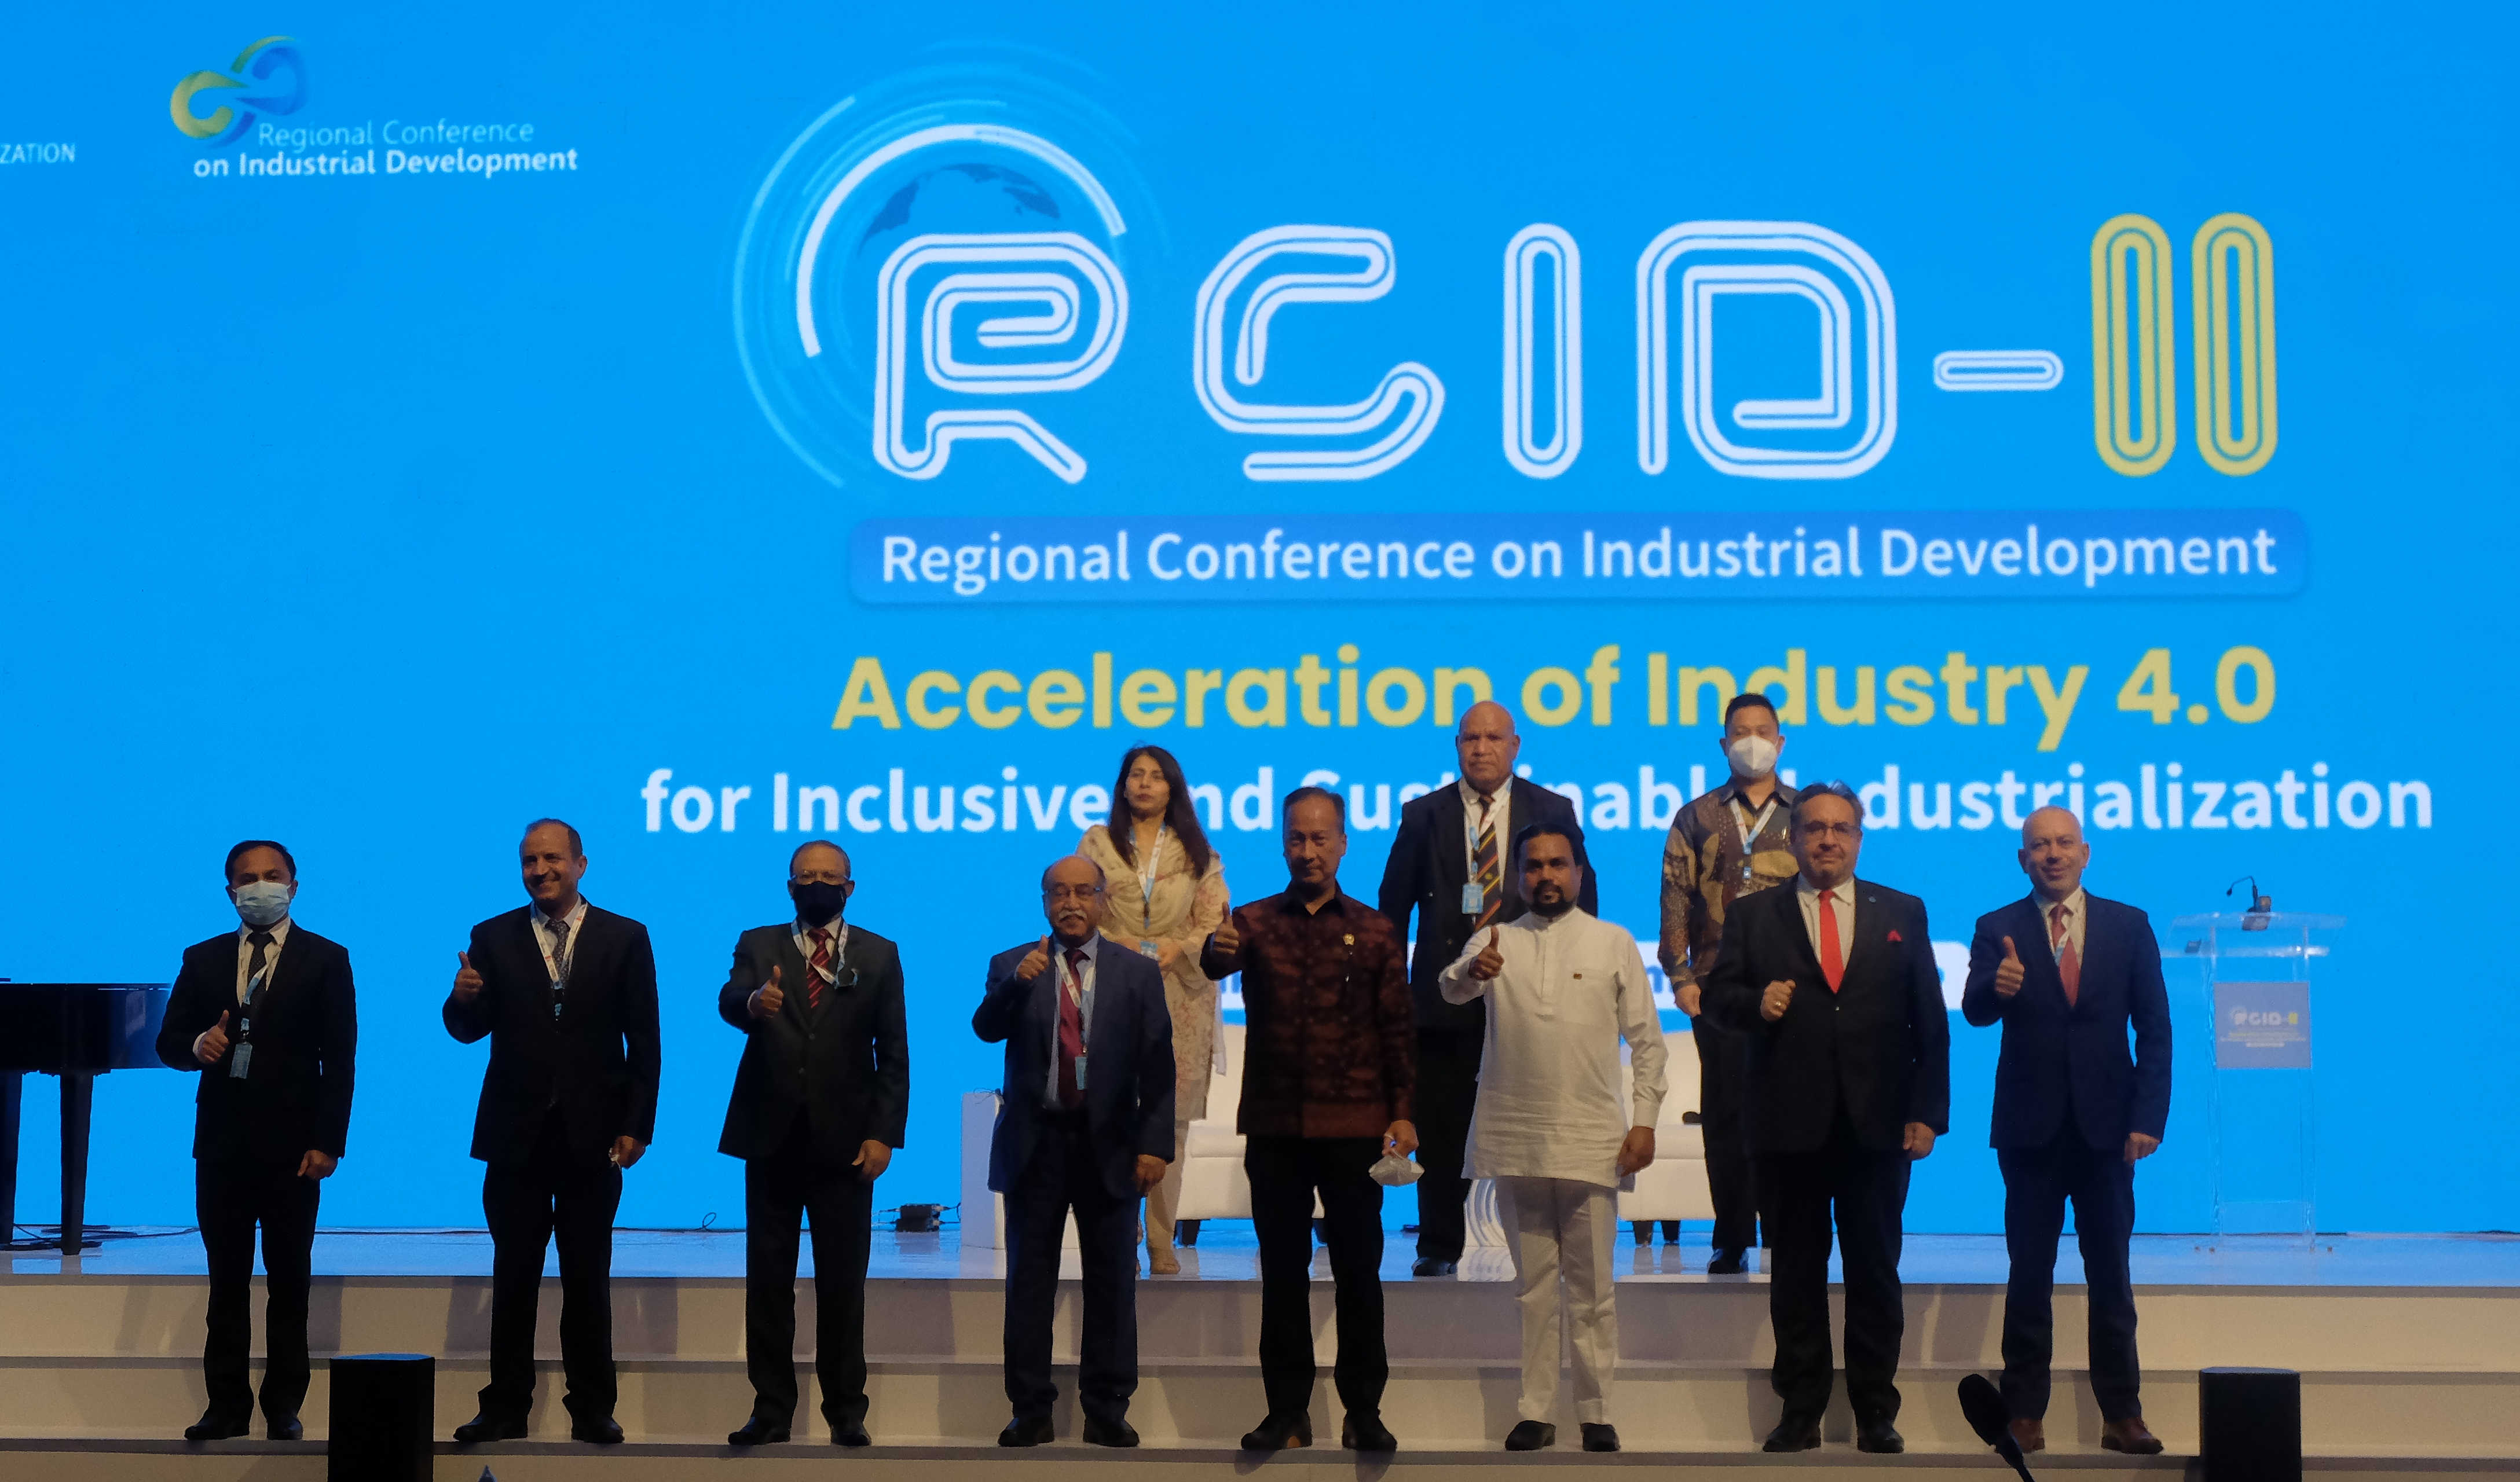 Pelaksanaan RCID ke-2: Transformasi Digital Dukung Pembangunan Industri Inklusif dan Berkelanjutan